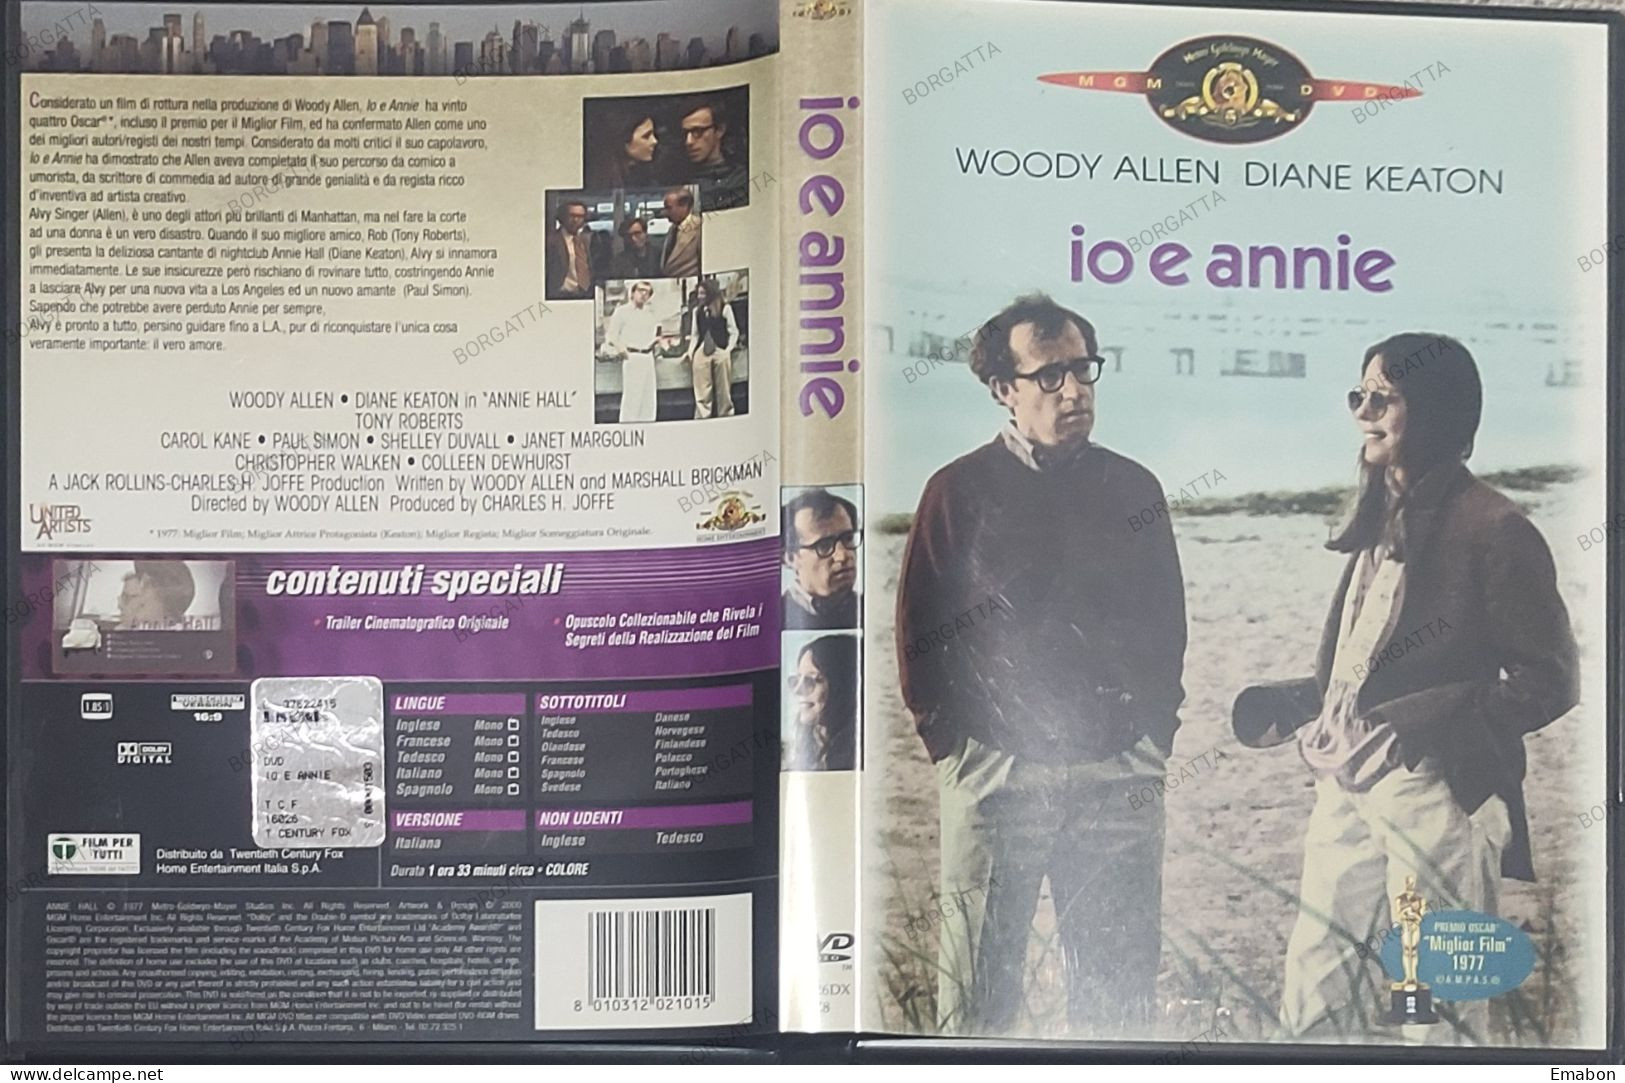 BORGATTA - COMMEDIA - DVD IO E ANNIE - WOODY ALLEN, DIANE KEATON - PAL 2 - MGM 2000 - USATO In Buono Stato - Commedia